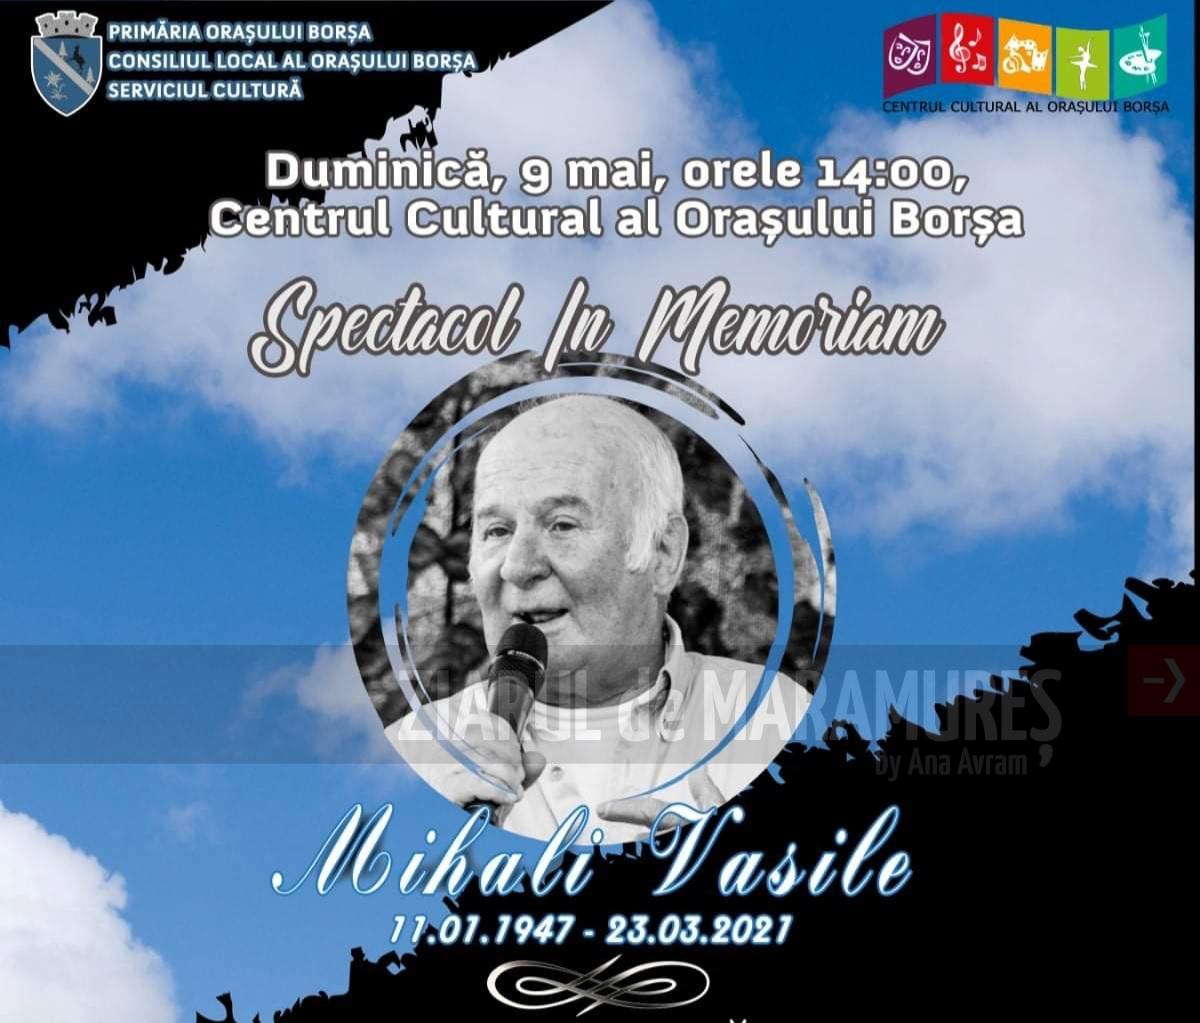 Borșa: Spectacol omagial în memoria regretatului Mihali Vasile, duminică 9 mai